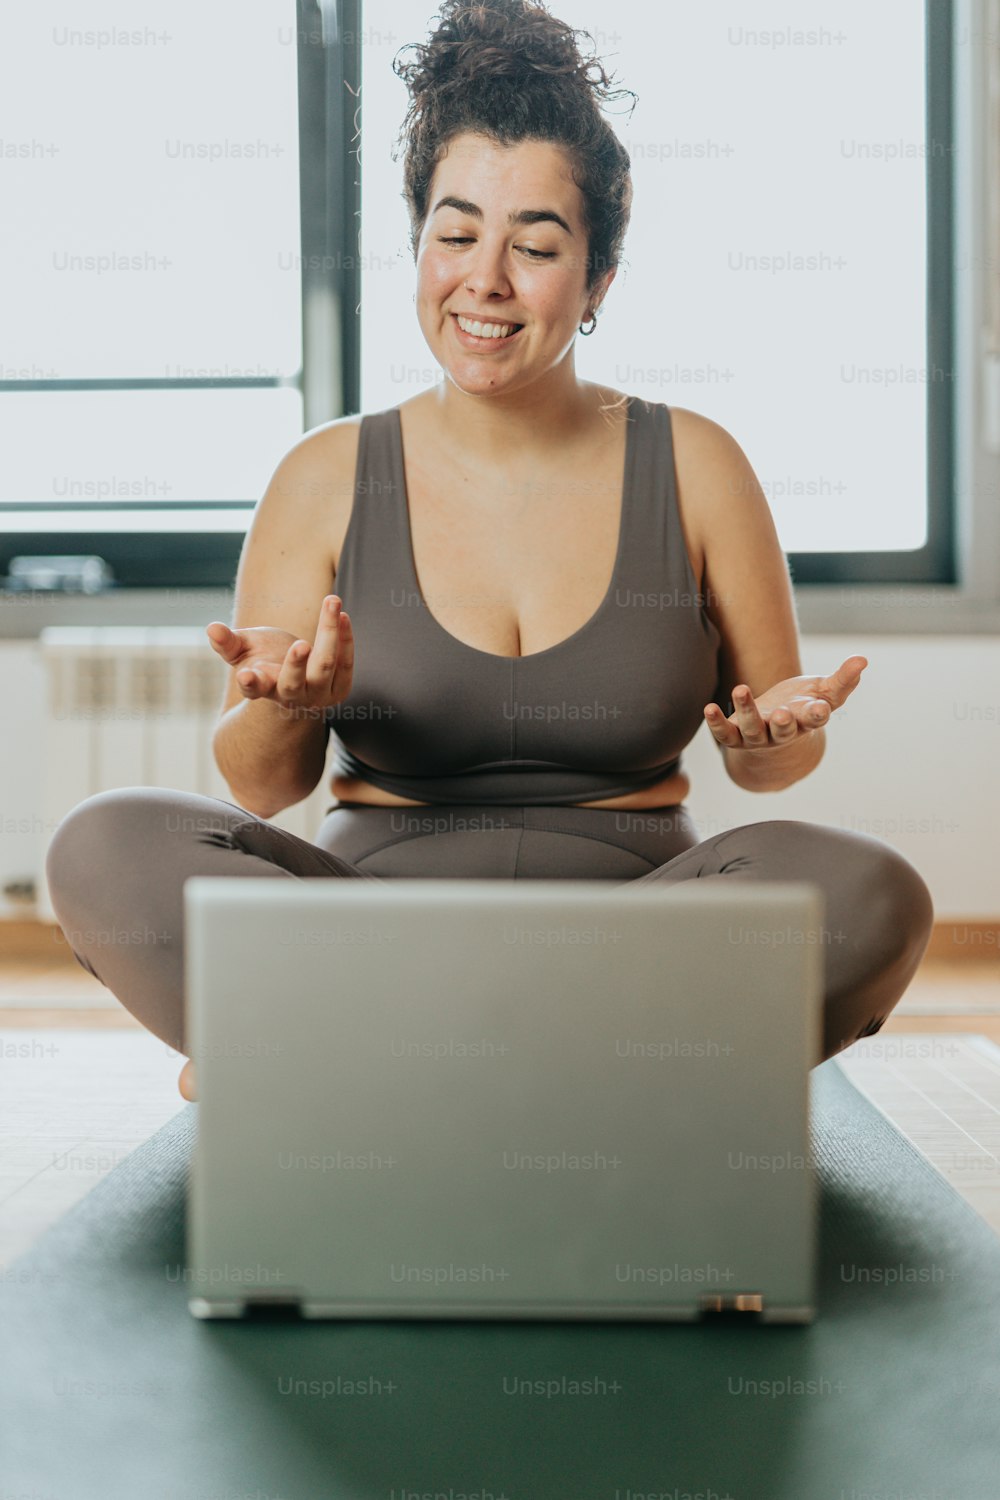 Una mujer sentada en una esterilla de yoga frente a una computadora portátil